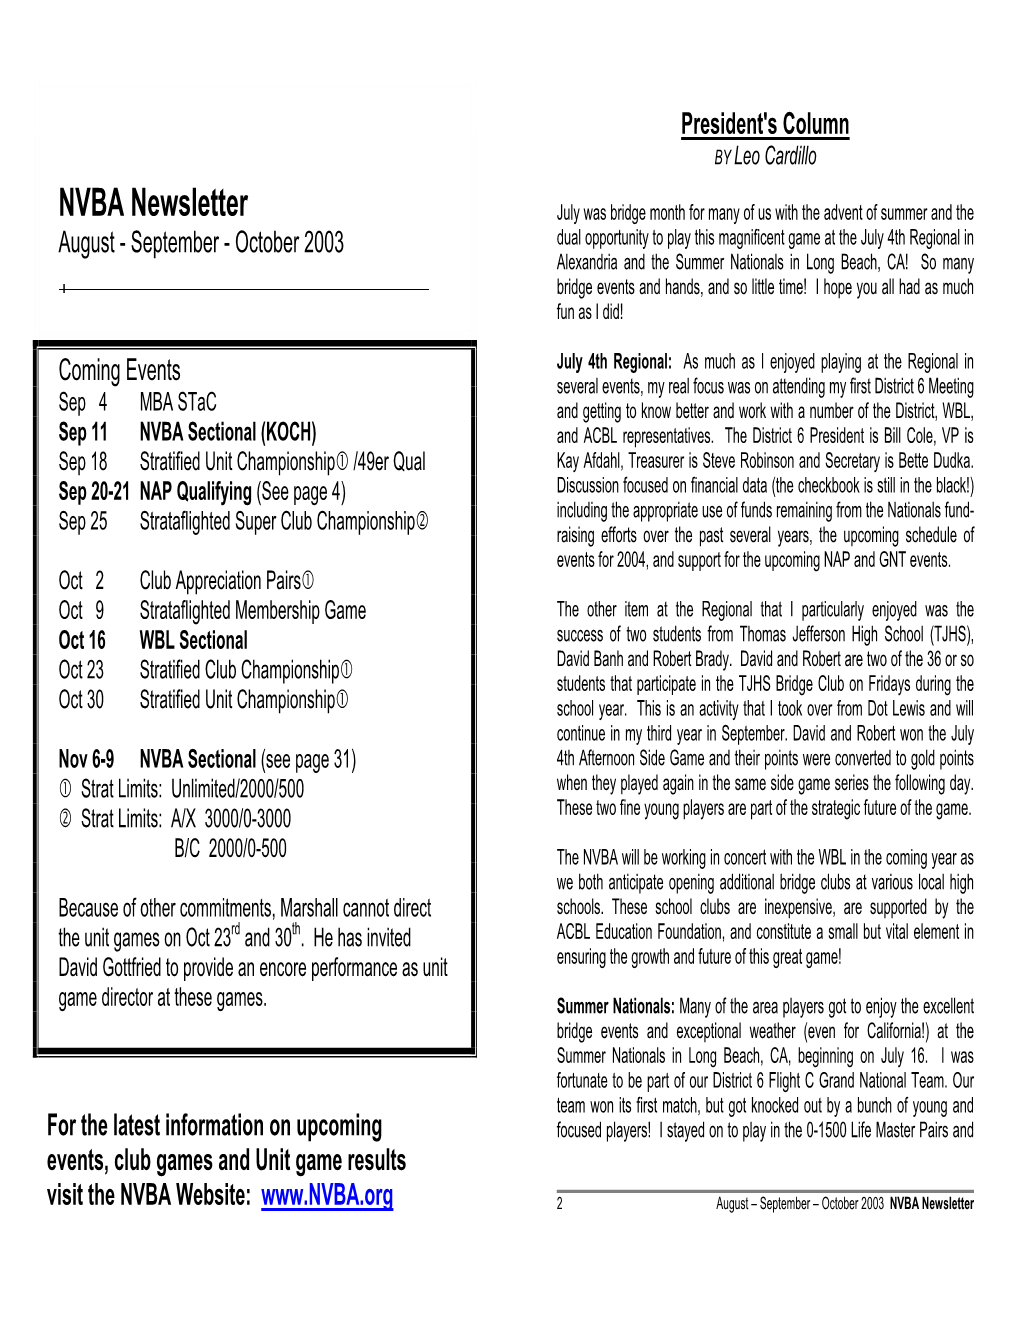 NVBA Newsletter